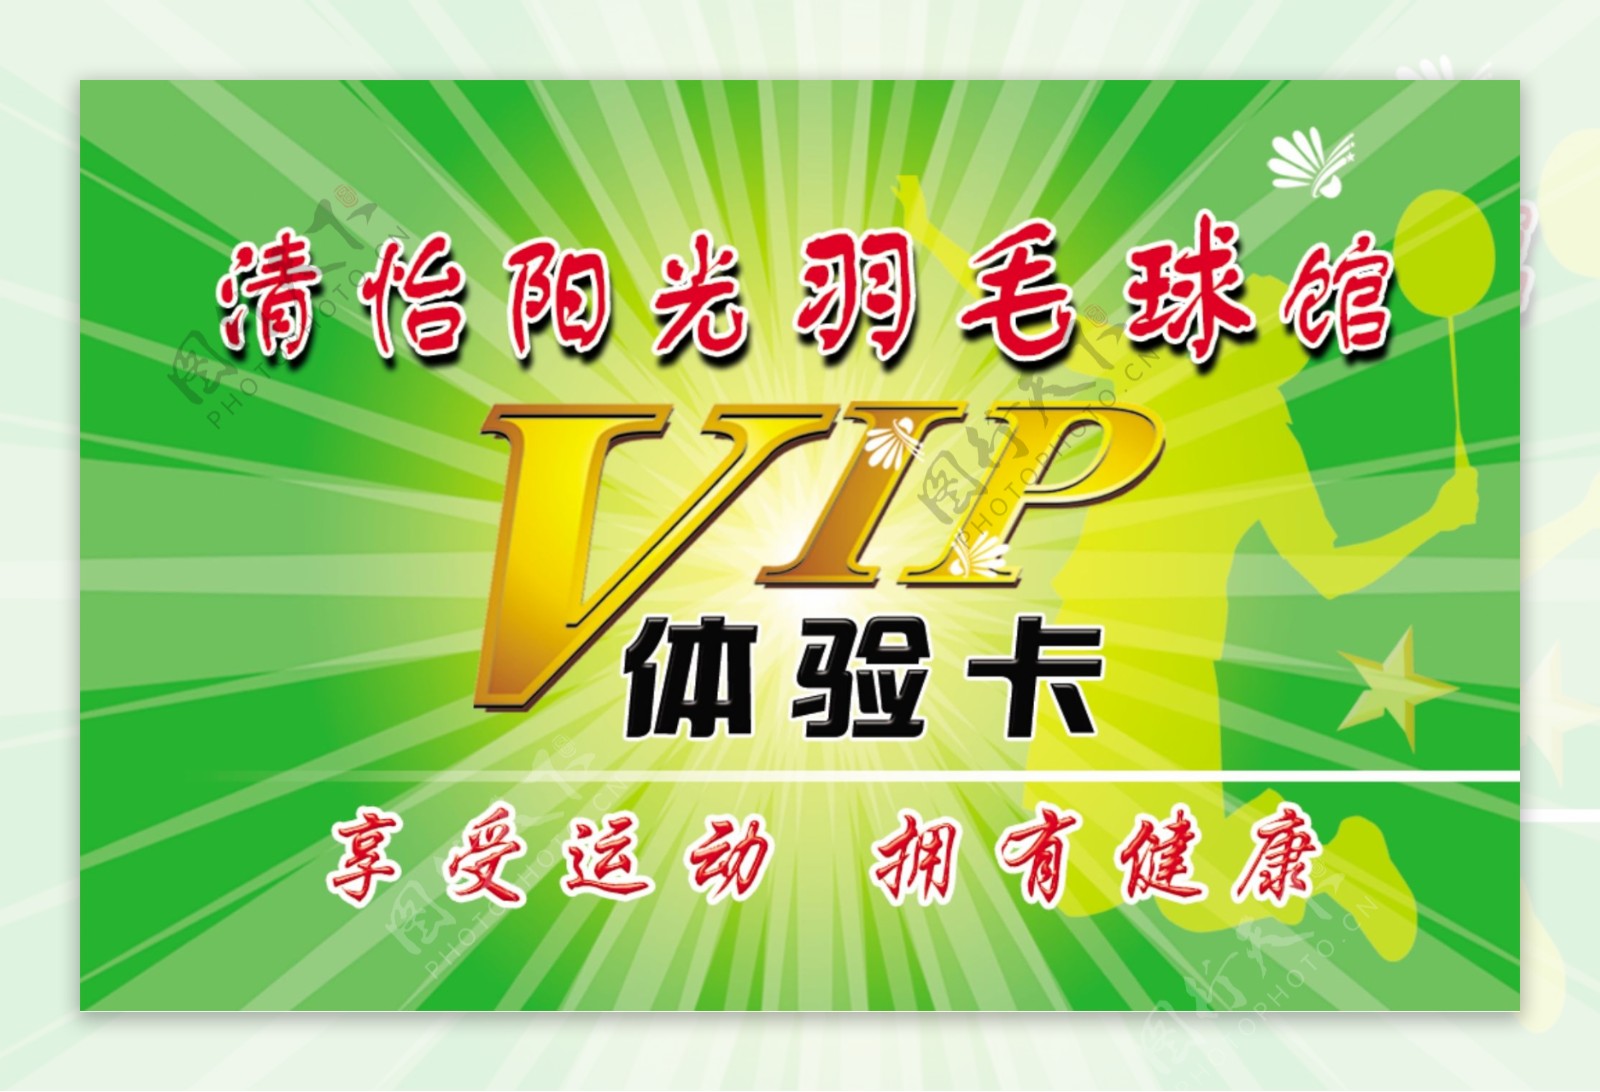 博远羽毛球俱乐部VIP卡正面